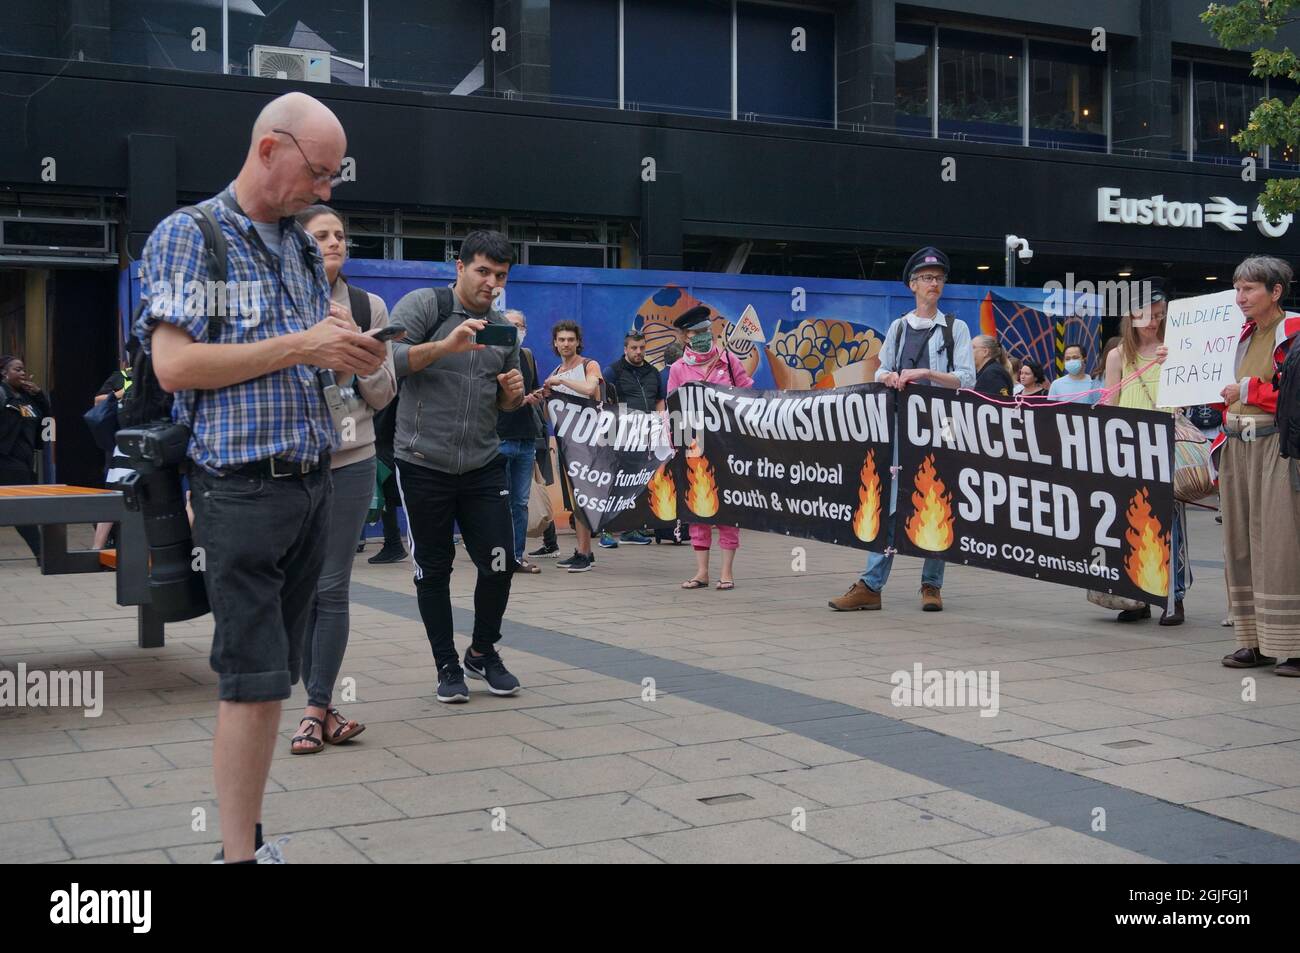 Londres, Reino Unido. Septiembre de 9th 2021: Activistas ambientales protestan contra la línea de HS2 mientras instan al Gobierno a “frenar de emergencia” la asamblea del proyecto en la marcha de la Nueva Iglesia de St Pancras a la Estación Euston. Crédito: Picture Capital/Alamy Live News Foto de stock